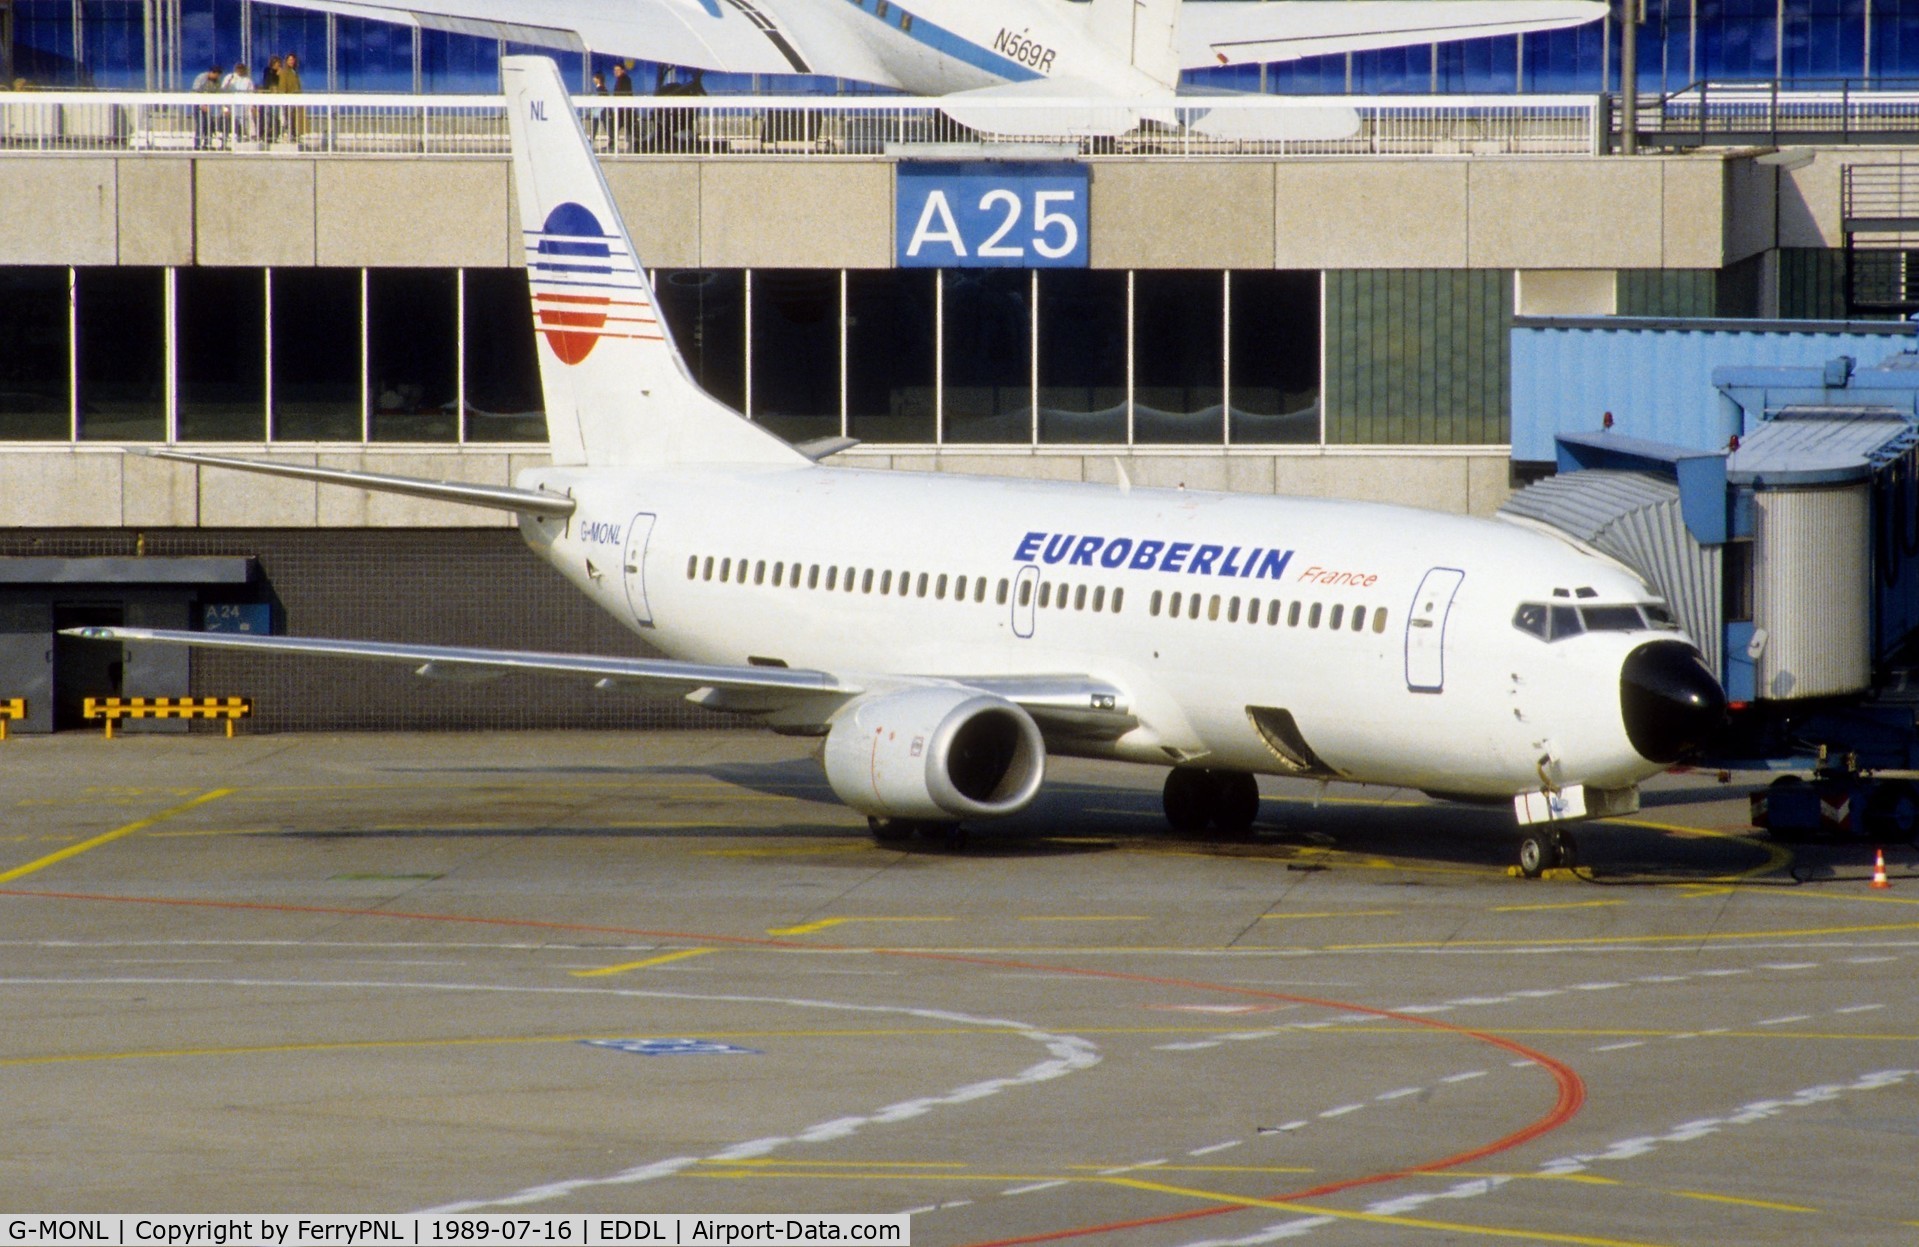 G-MONL, 1988 Boeing 737-3Y0 C/N 24255, Euroberlin B733 awaiting pax in DUS